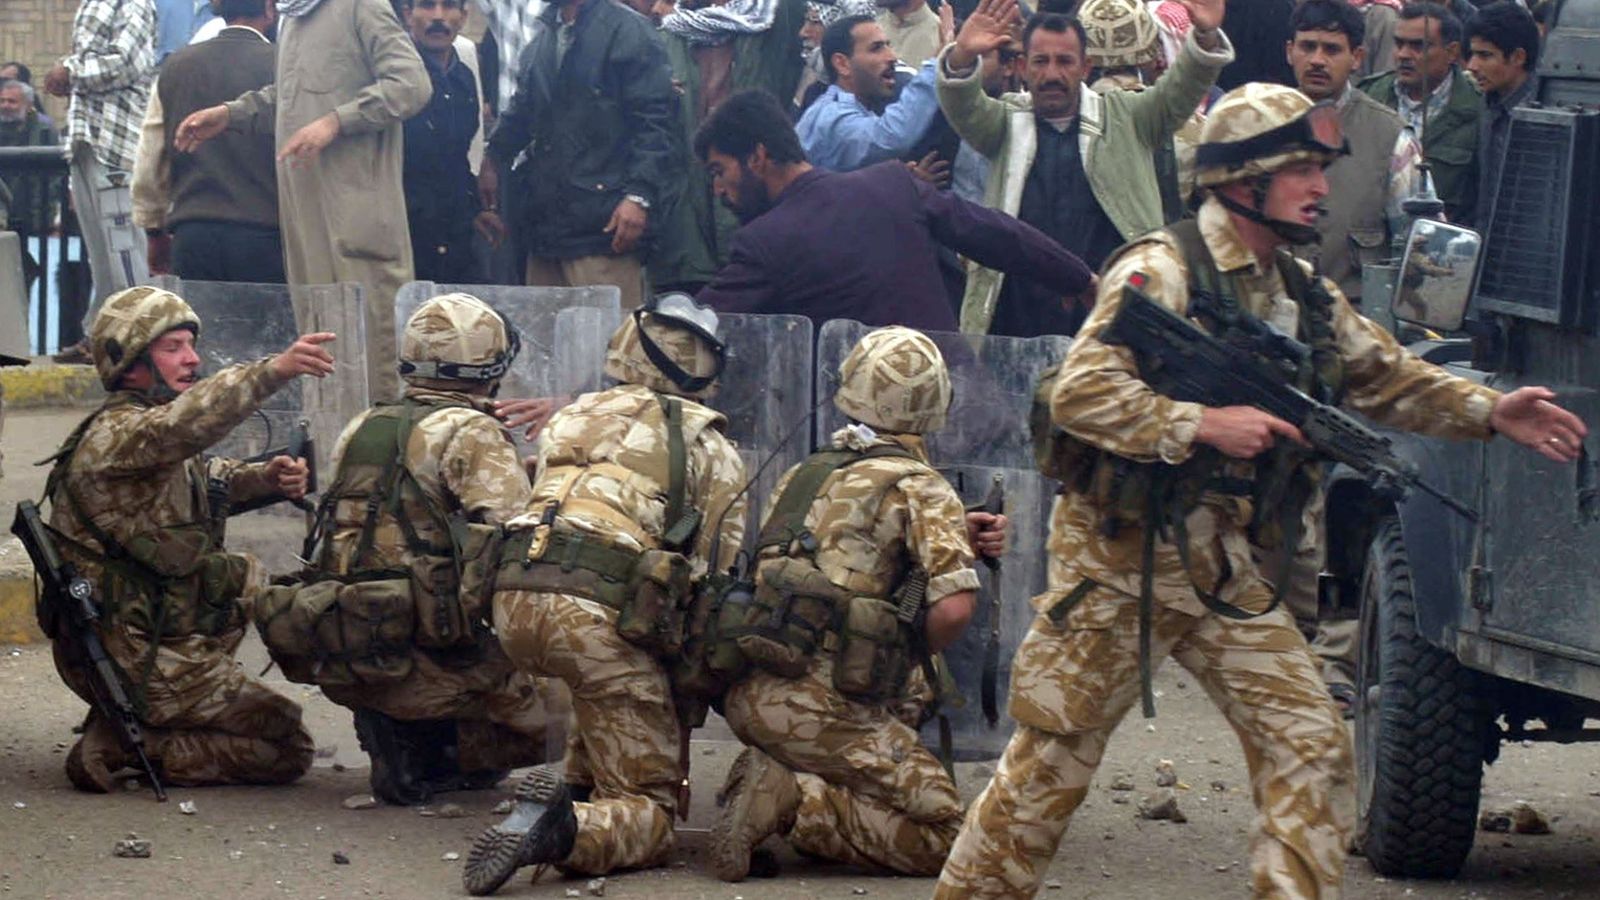 Foto: Soldados británicos en la ciudad iraquí de Basora durante una protesta, en enero de 2004 (Reuters)